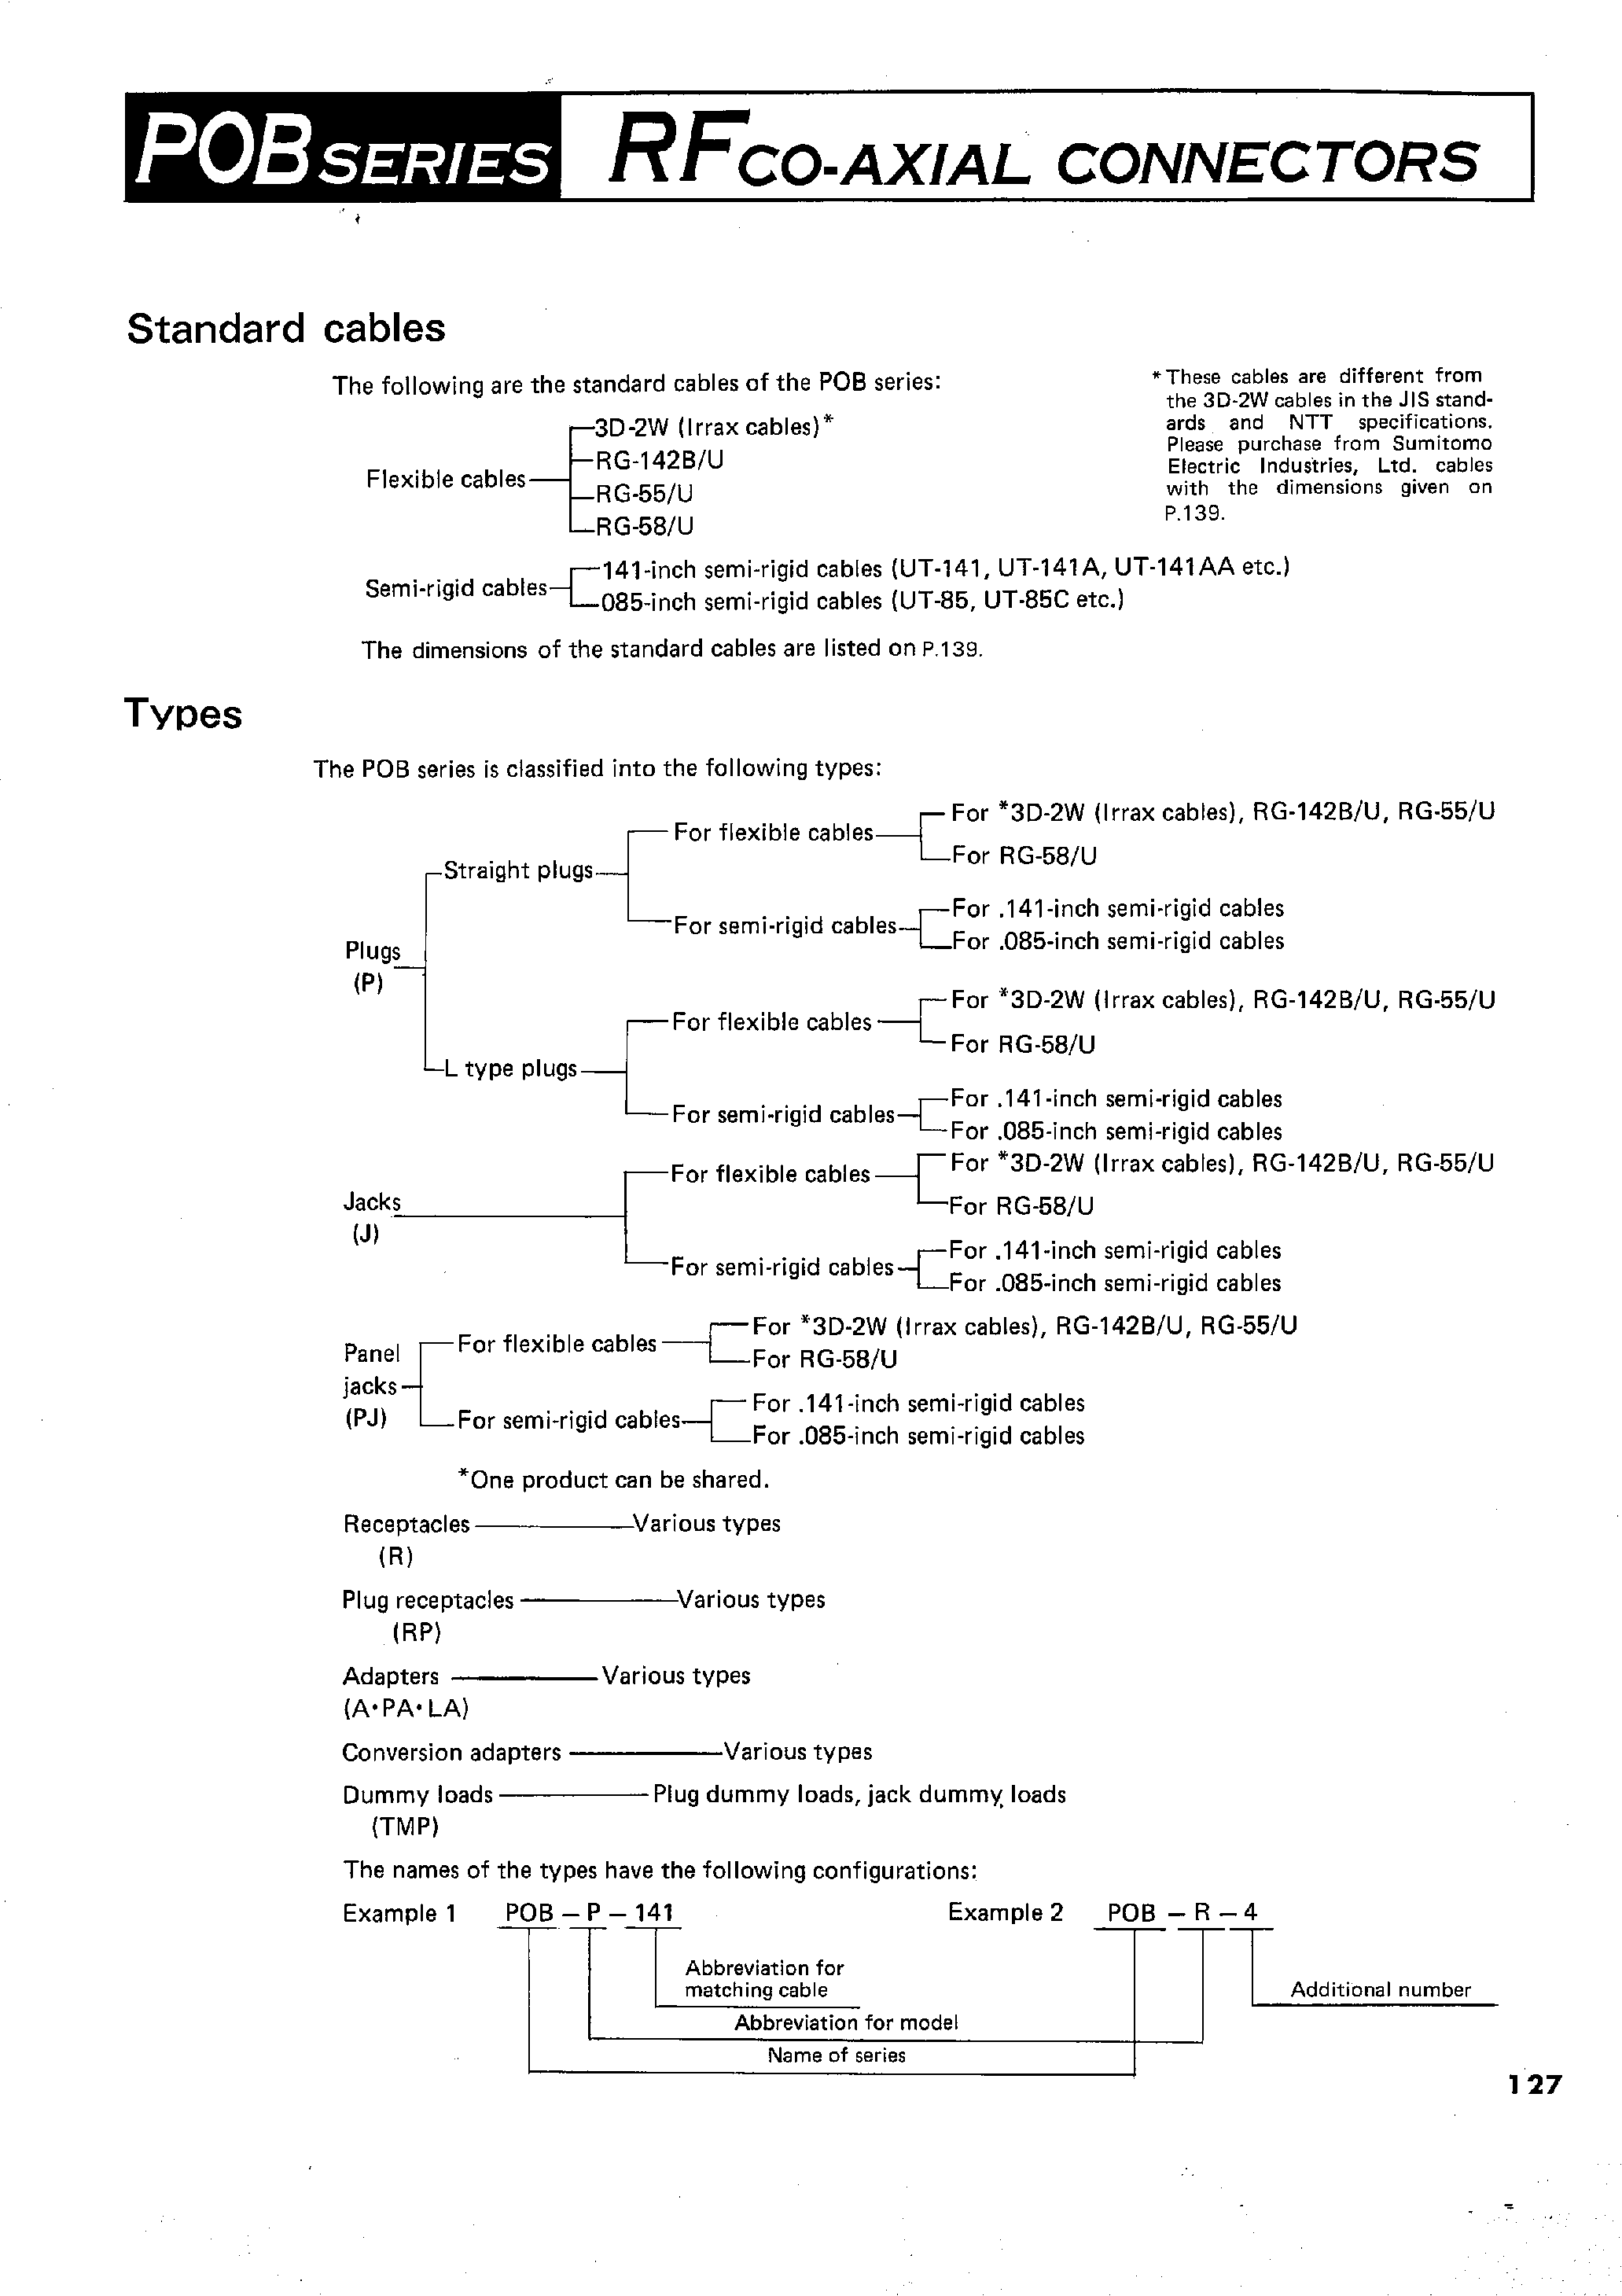 Datasheet POB-LP-55/U - RFCO-AXIAL CONNECTORS page 2